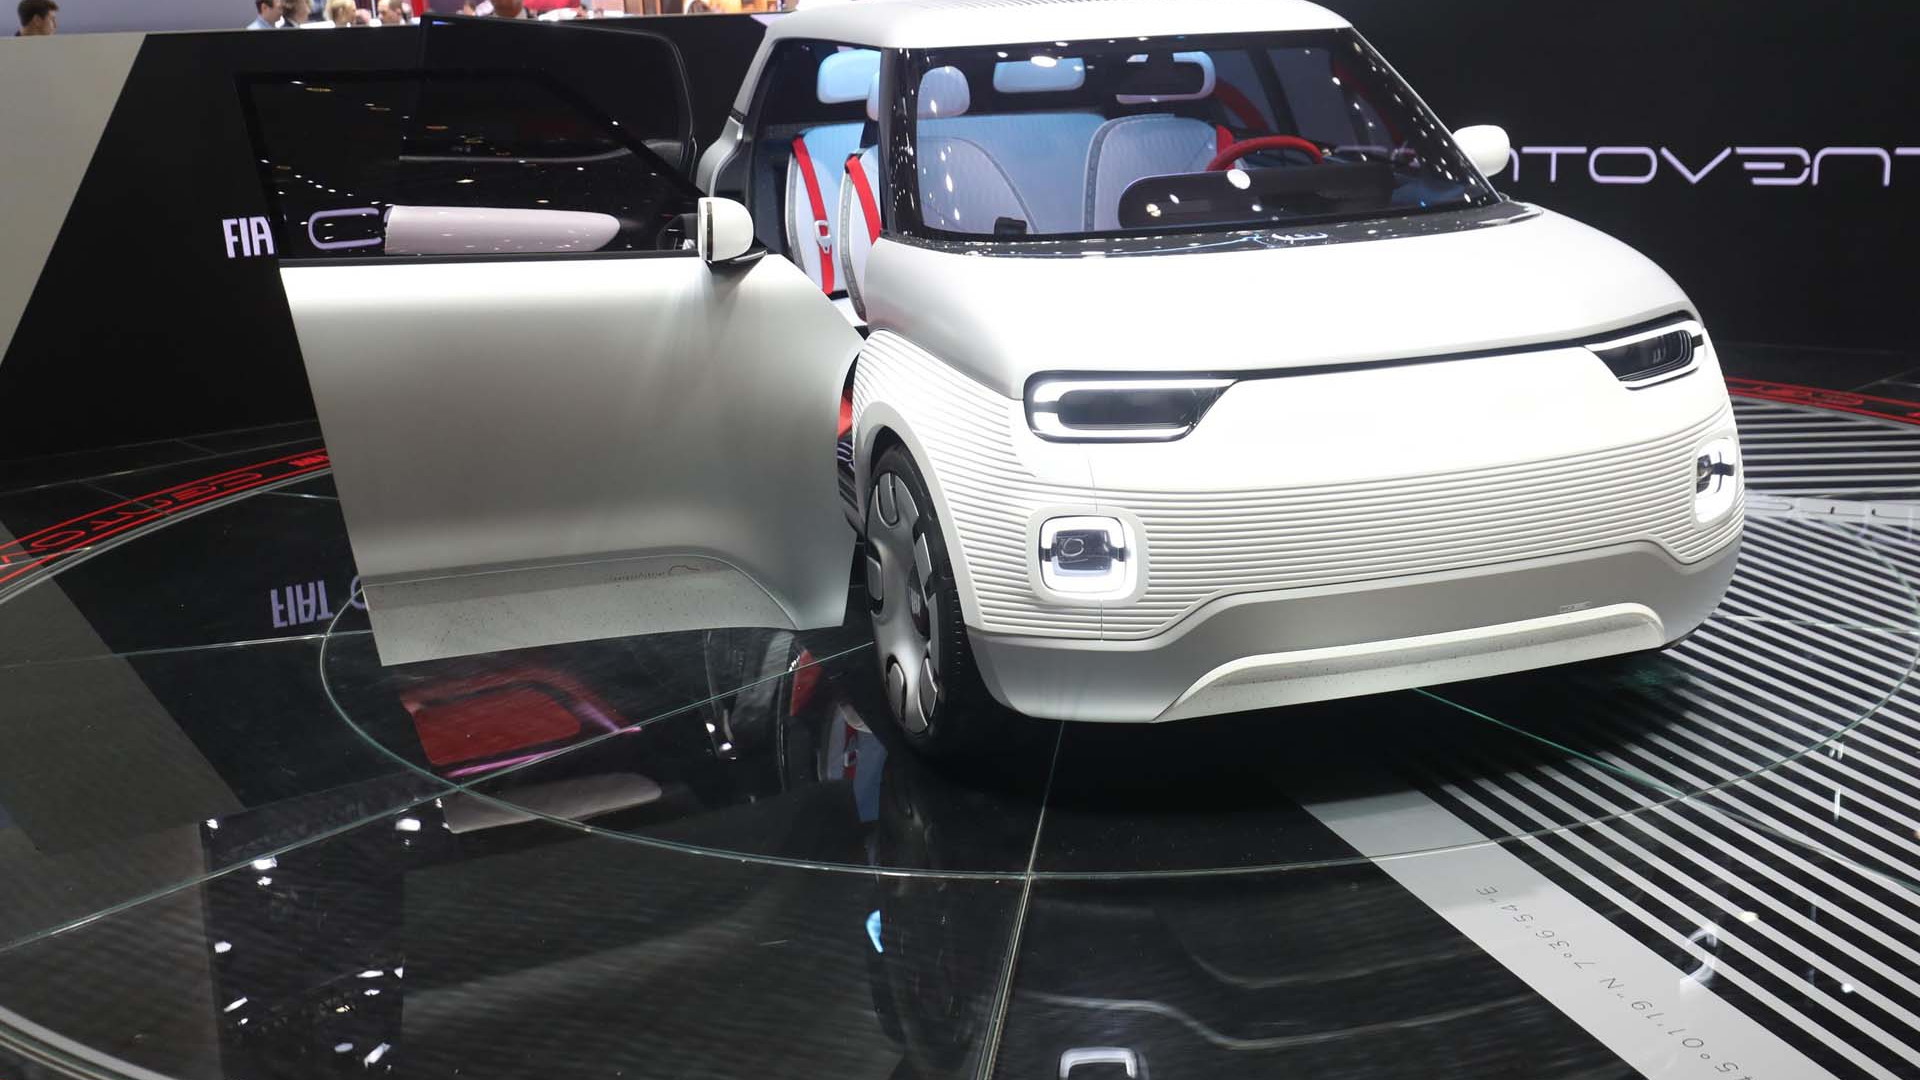 Fiat Concept Centoventi concept